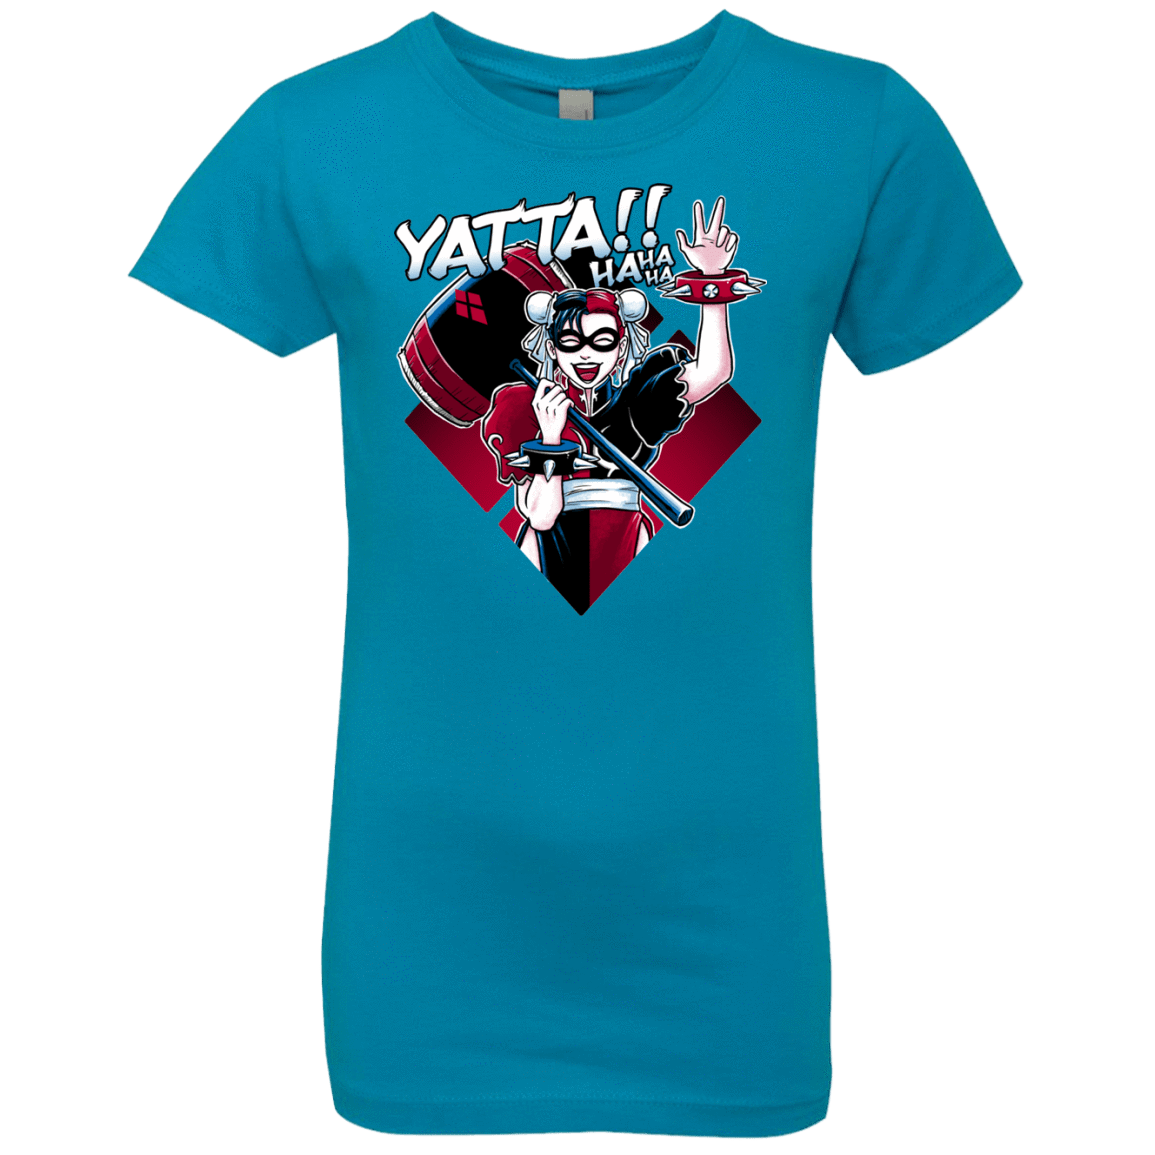 T-Shirts Turquoise / YXS Harley Yatta Girls Premium T-Shirt